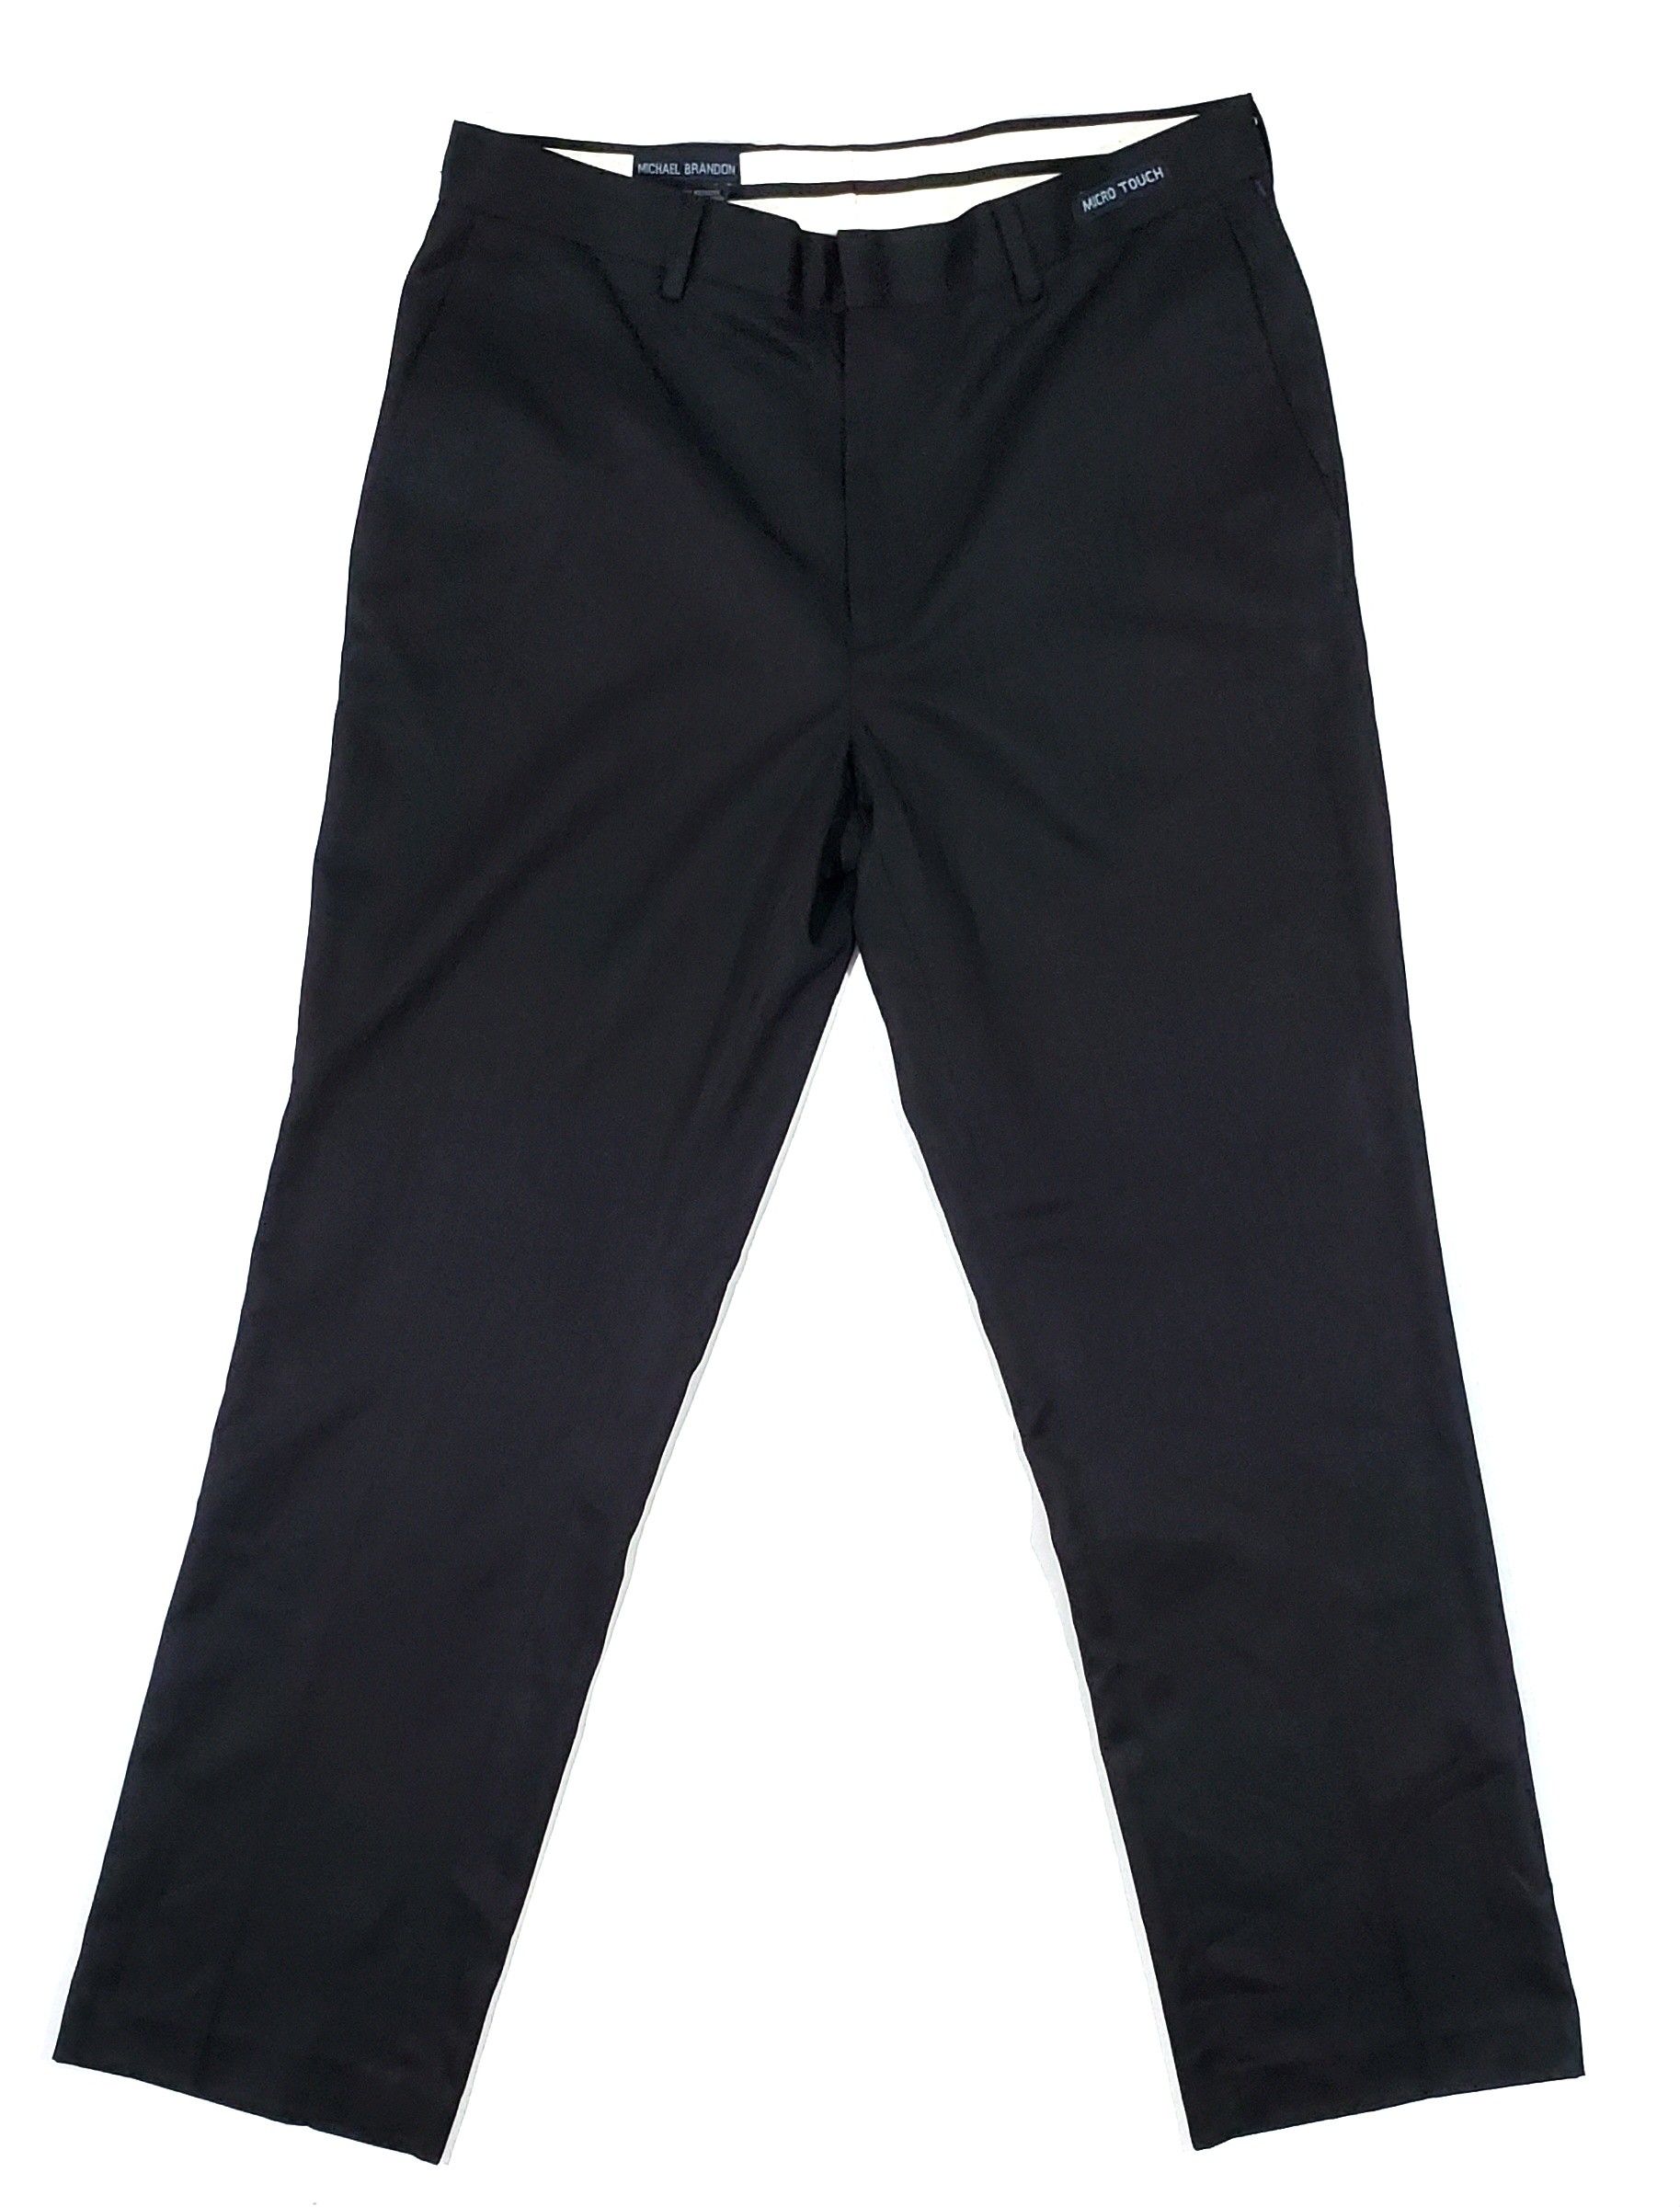 MICHAEL BRANDON Mens Dress Micro Touch Polyester Black Pants 34x30